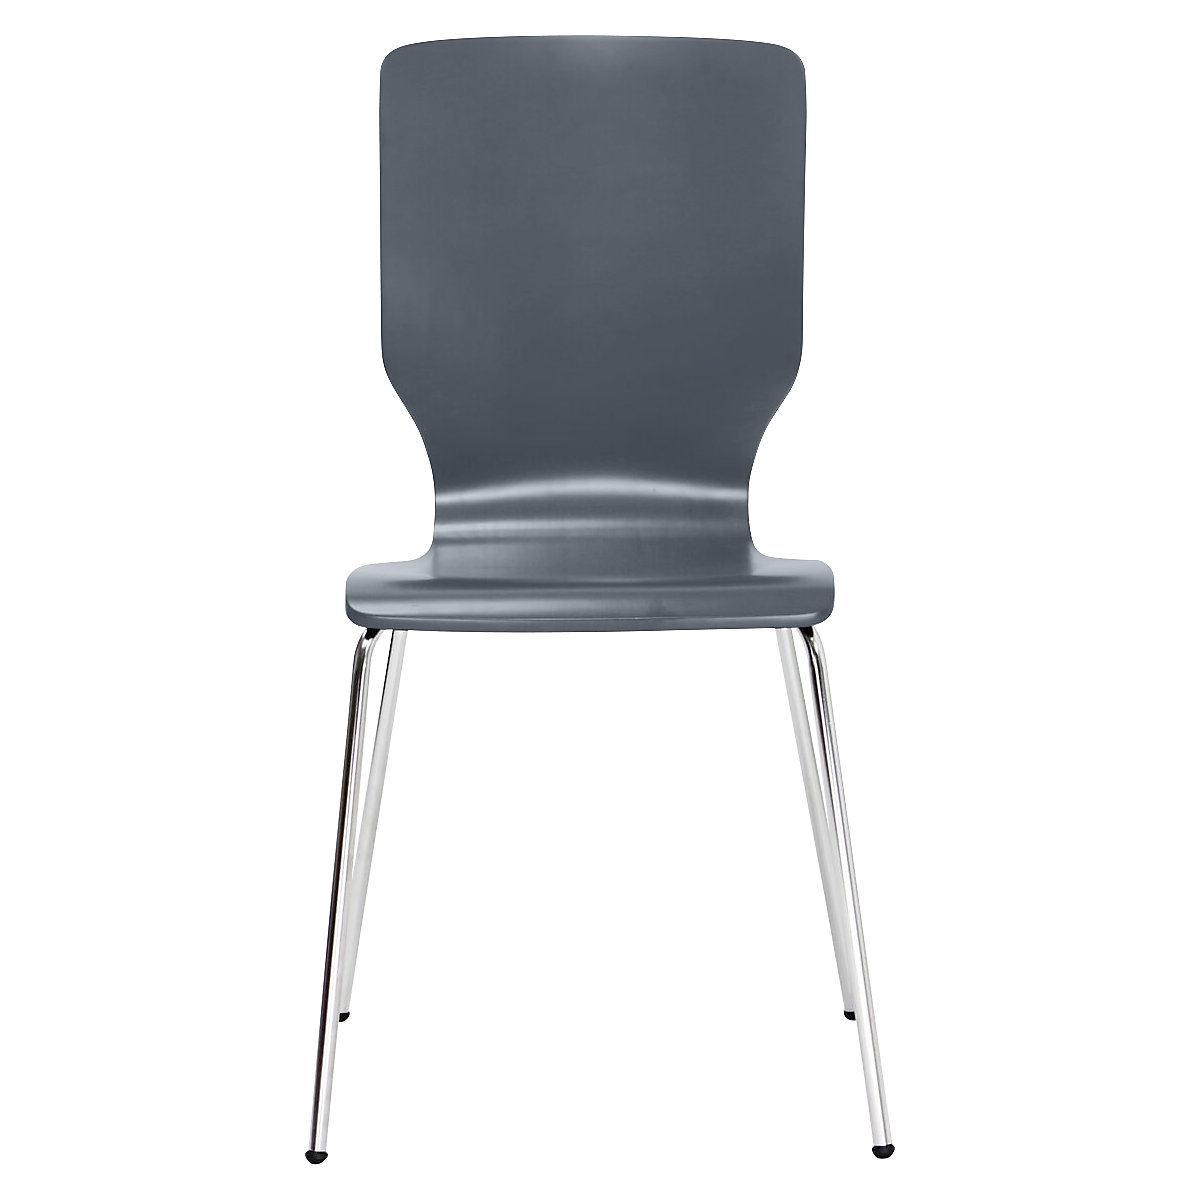 Drvena školjkasta stolica, VxŠxD 850 x 400 x 520 mm, pak. 4 kom., koritasto sjedalo u antracit boji-9